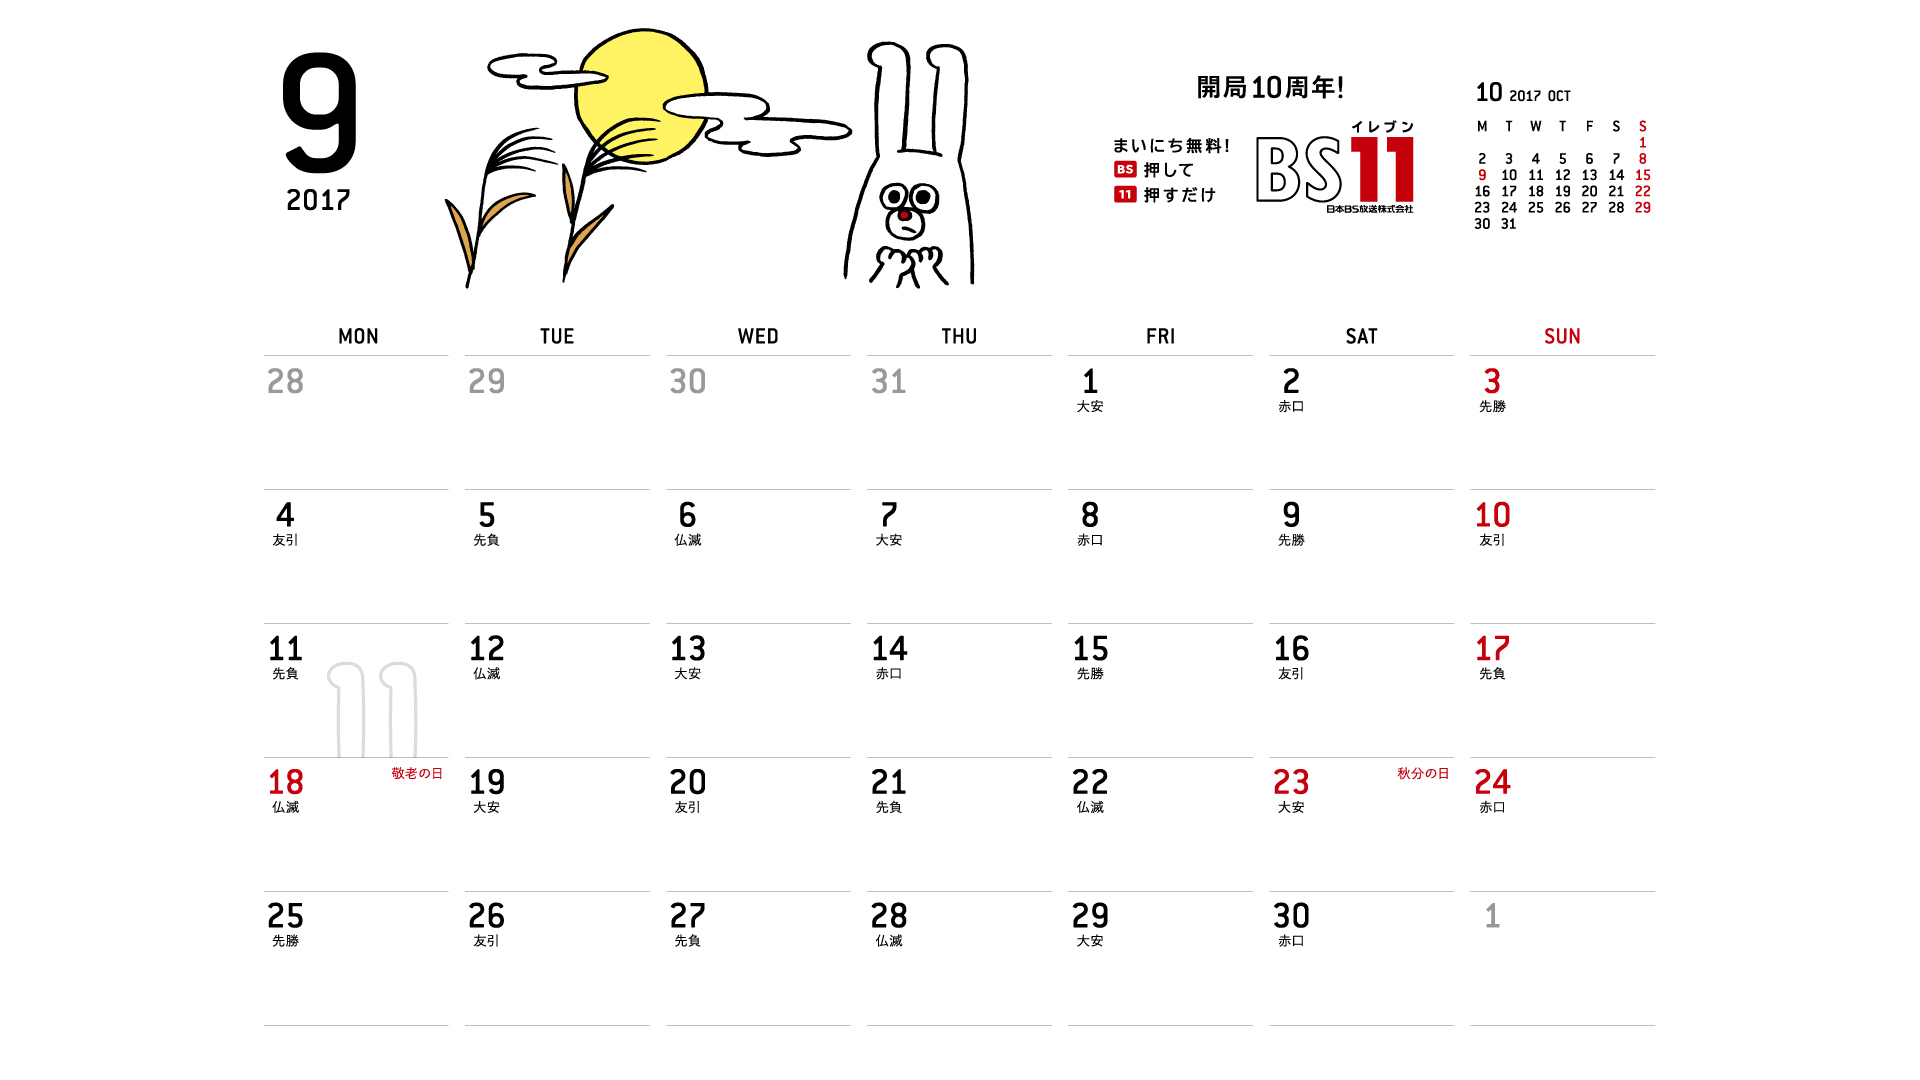 じゅういっちゃんのデジタルカレンダー17年09月 Bs11 イレブン いつでも無料放送